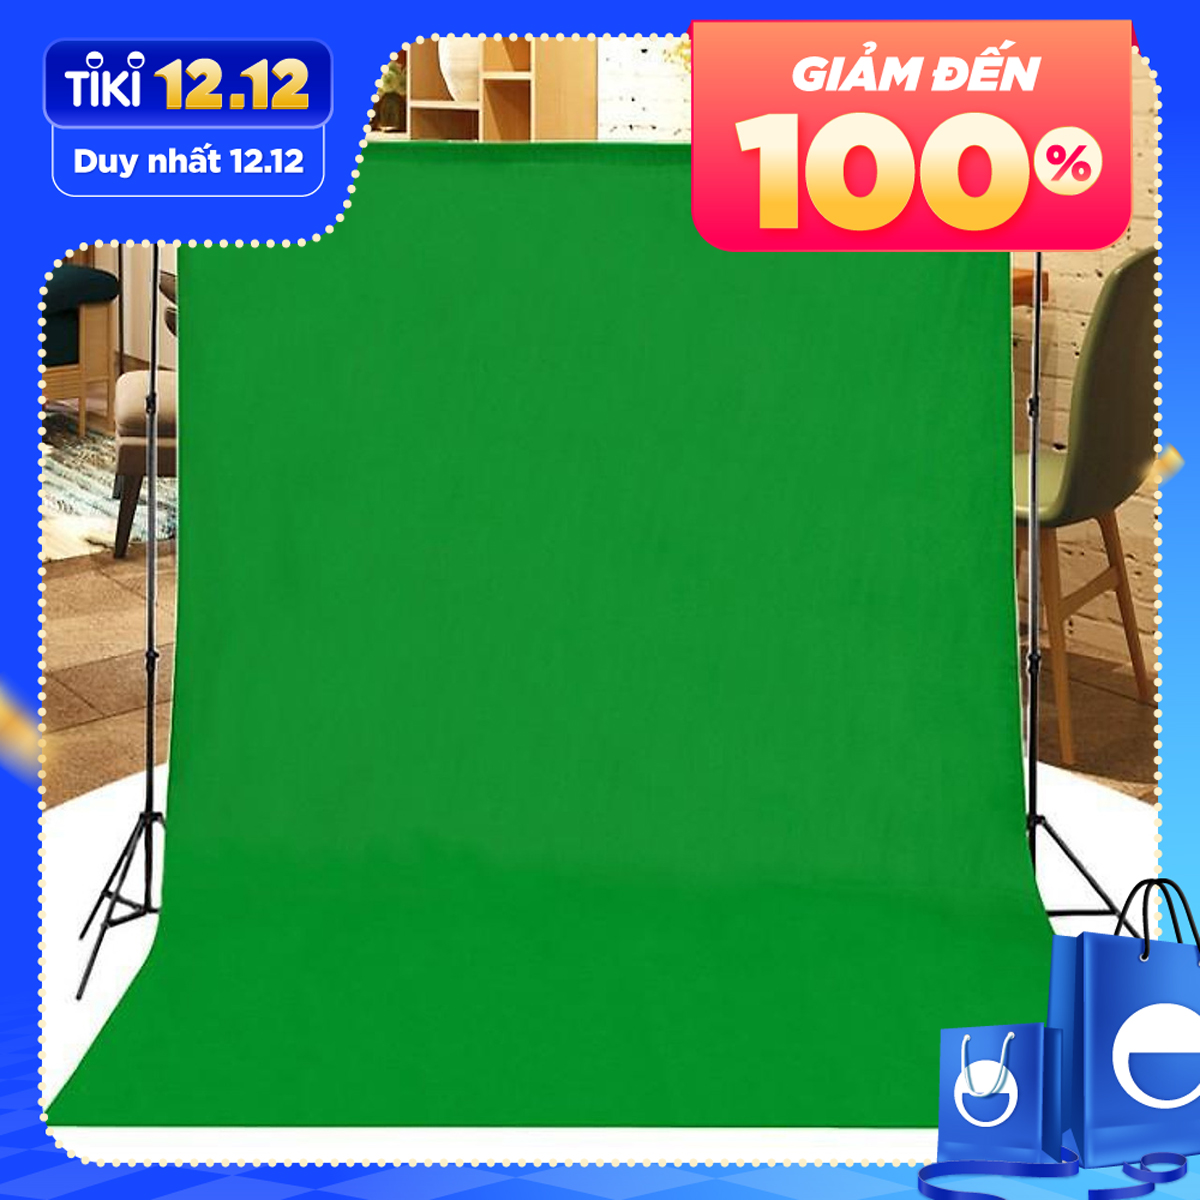 Phông nền chụp ảnh vải trơn màu xanh lá cây kích thước 2mx3m chuyên dùng chụp Studio, Lookbook hoặc Livestream